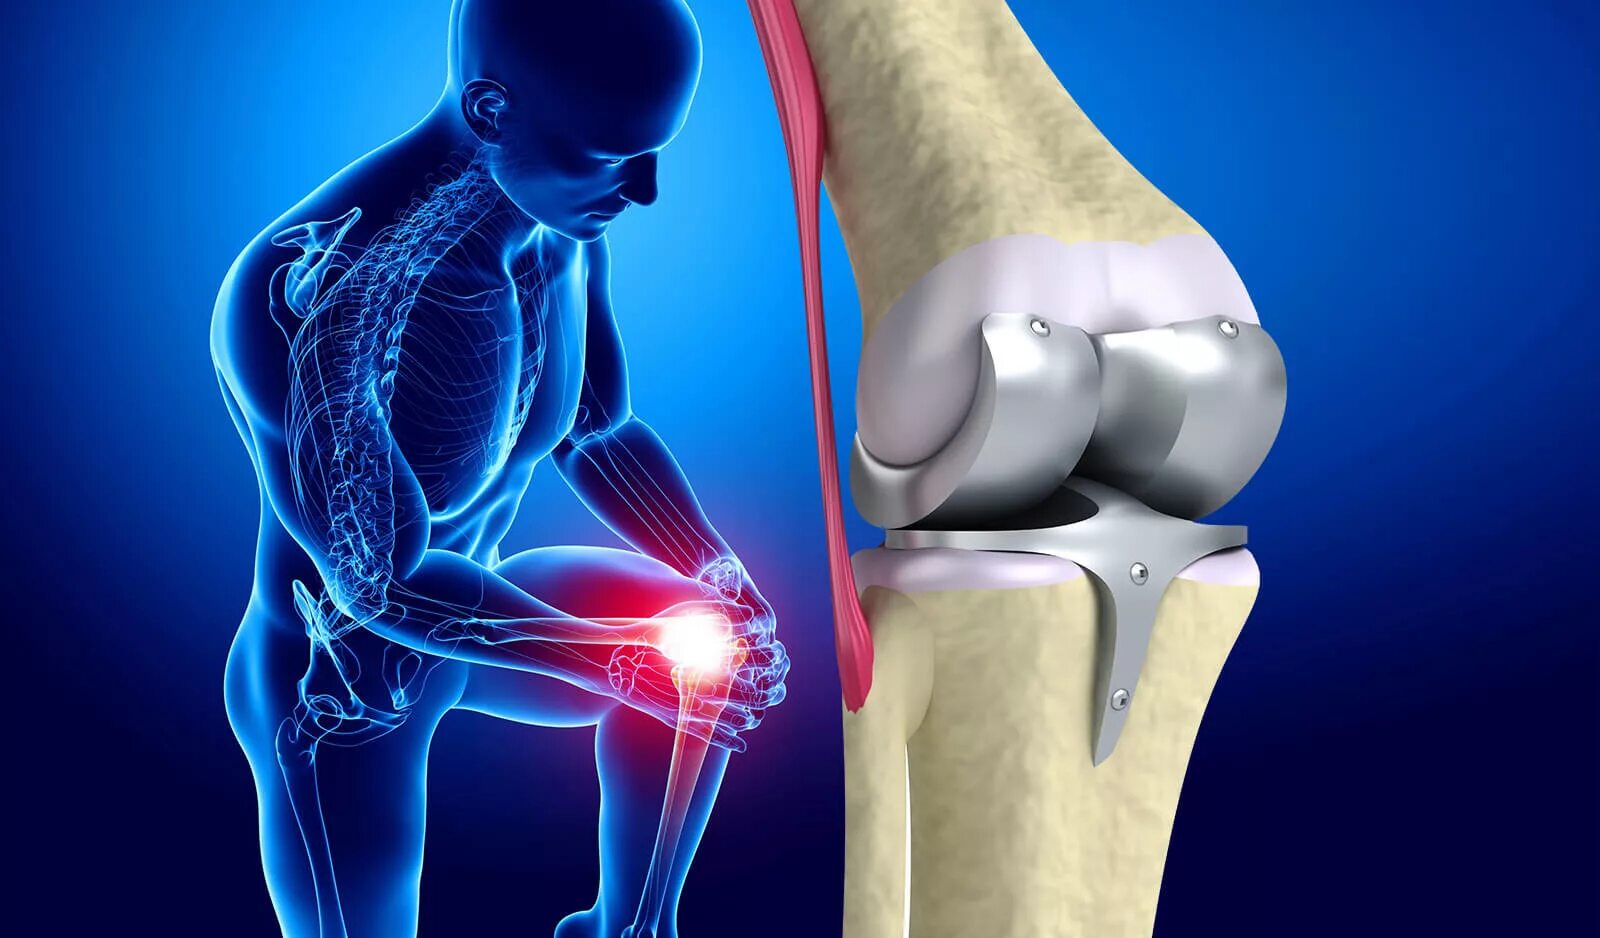 Эндопротезирование суставов травматология. Эндопротез коленного сустава. Артропластика коленного сустава. Эндопротезирование коленного Stryker.